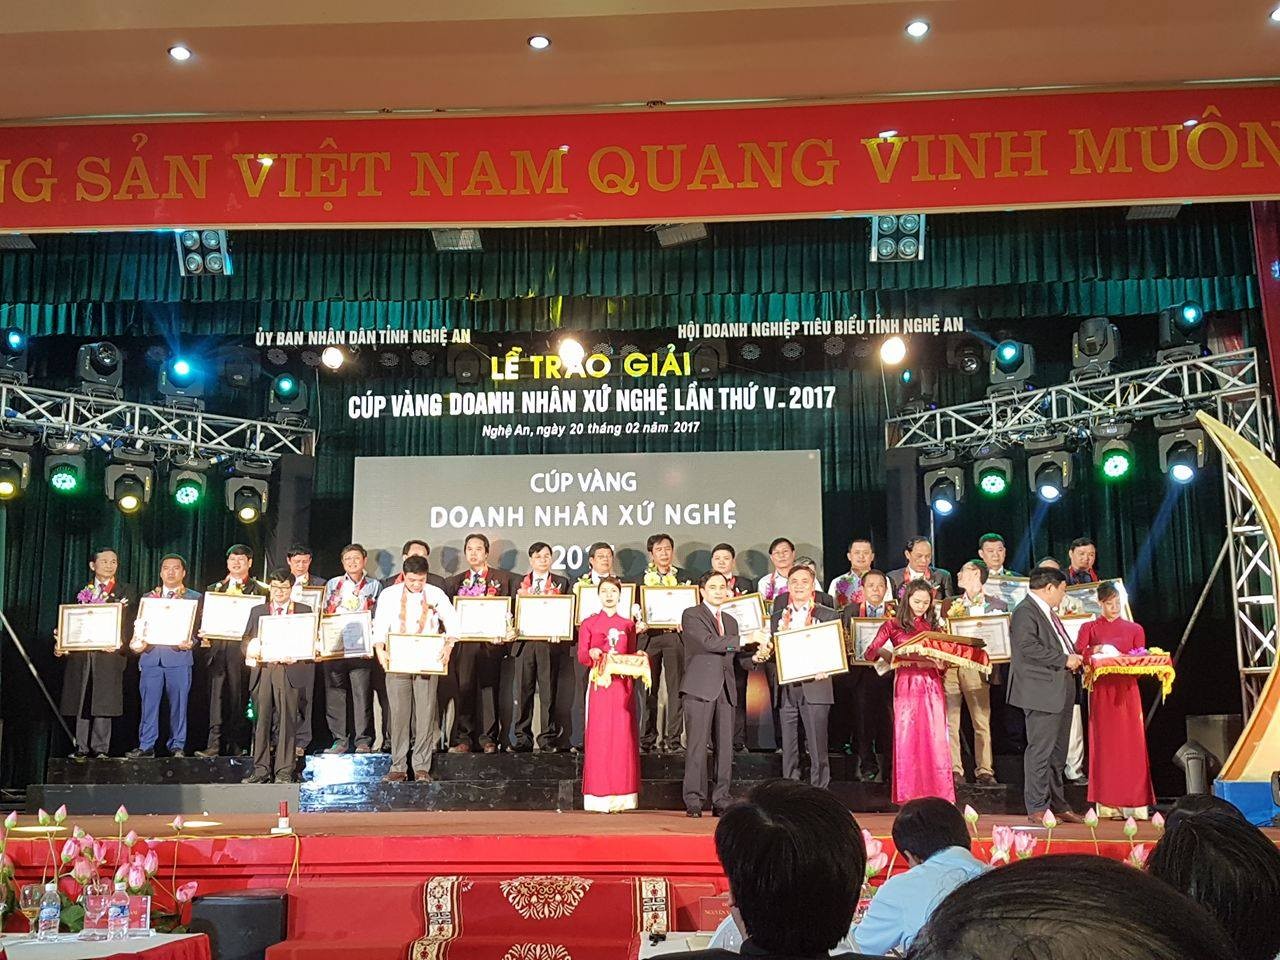 TGĐ CT TNHH Nhựa TNTP miền trung được trao giải thưởng “Cúp vàng doanh nhân xứ Nghệ” lần thứ 5 - Năm 2017